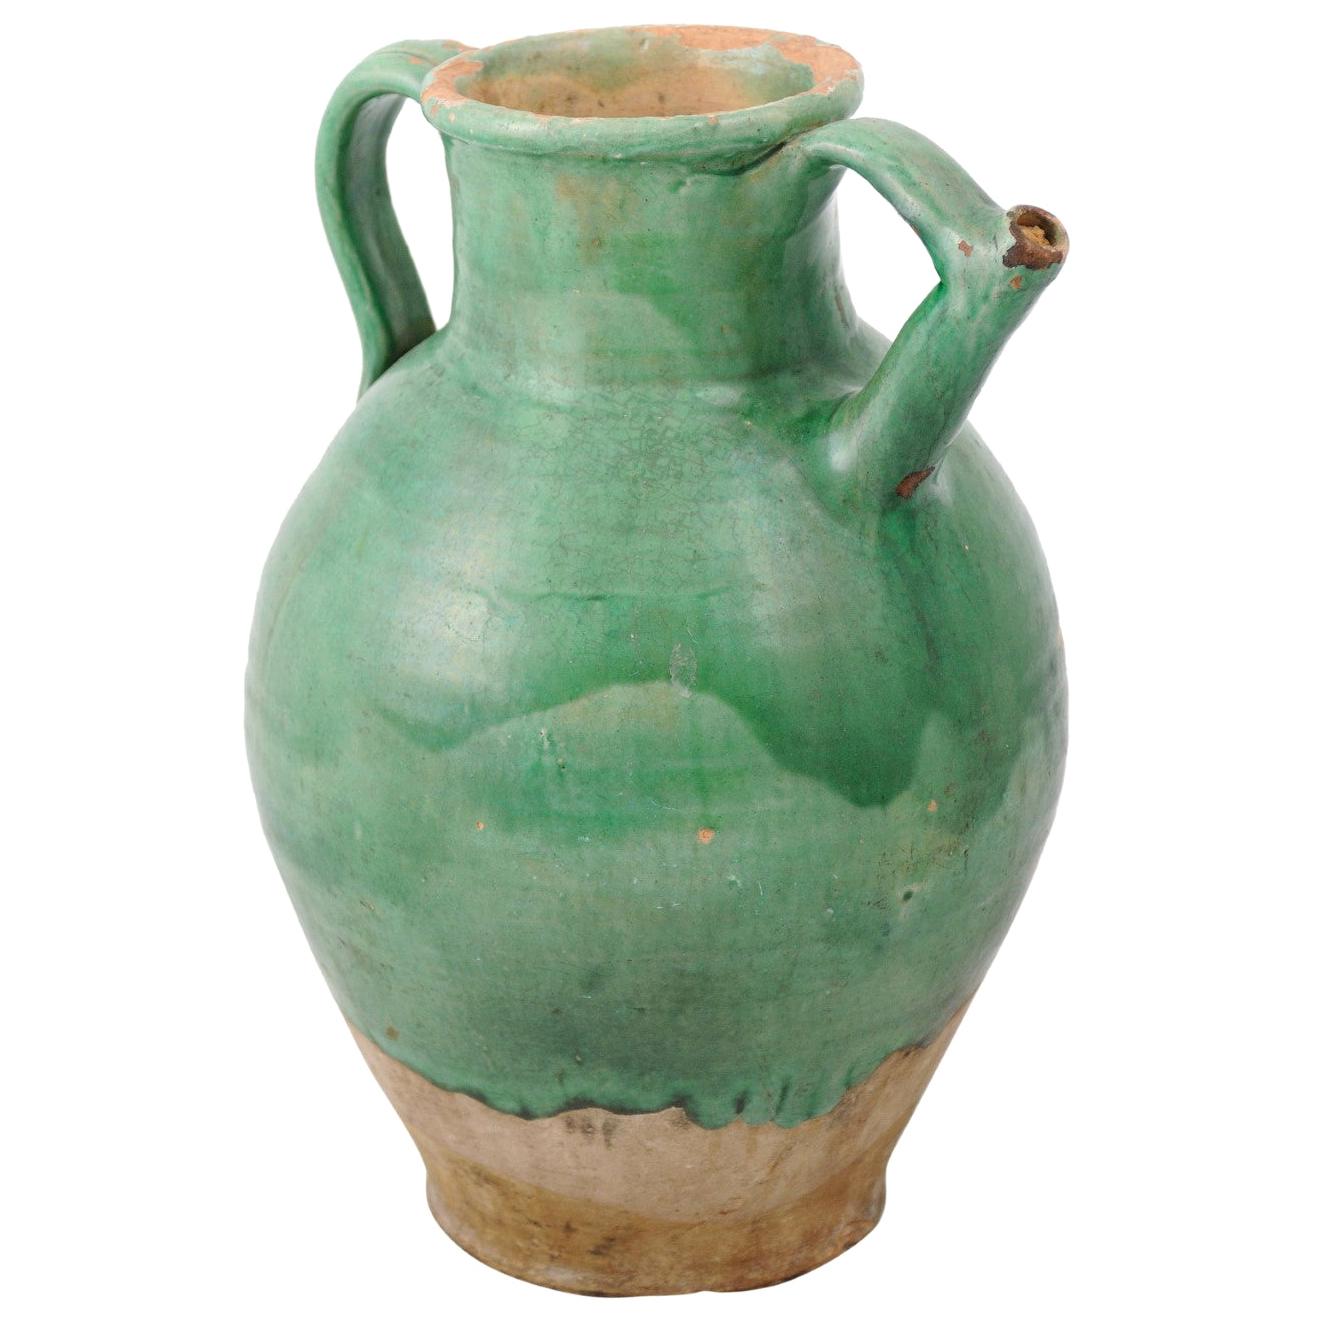 Pichet en poterie vernissée verte vieillie du 19ème siècle avec cuillère en vente